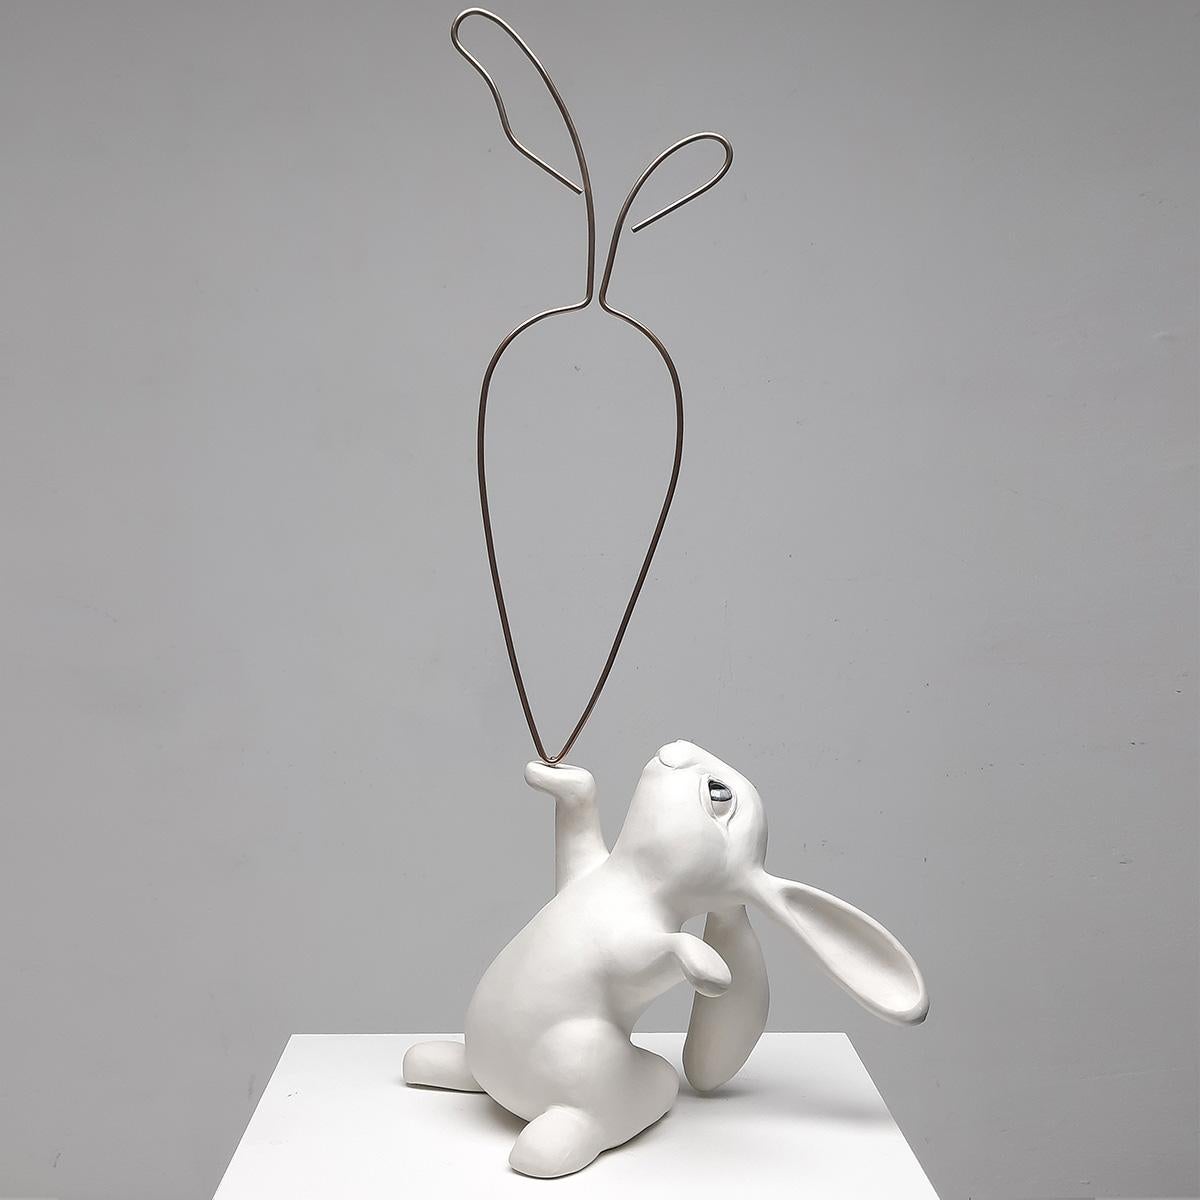 24 Carrot Gold- Original realistische Skulptur eines Wildtieres Kunstwerk- Zeitgenössische Kunst – Art von Henk Jan Sanderman